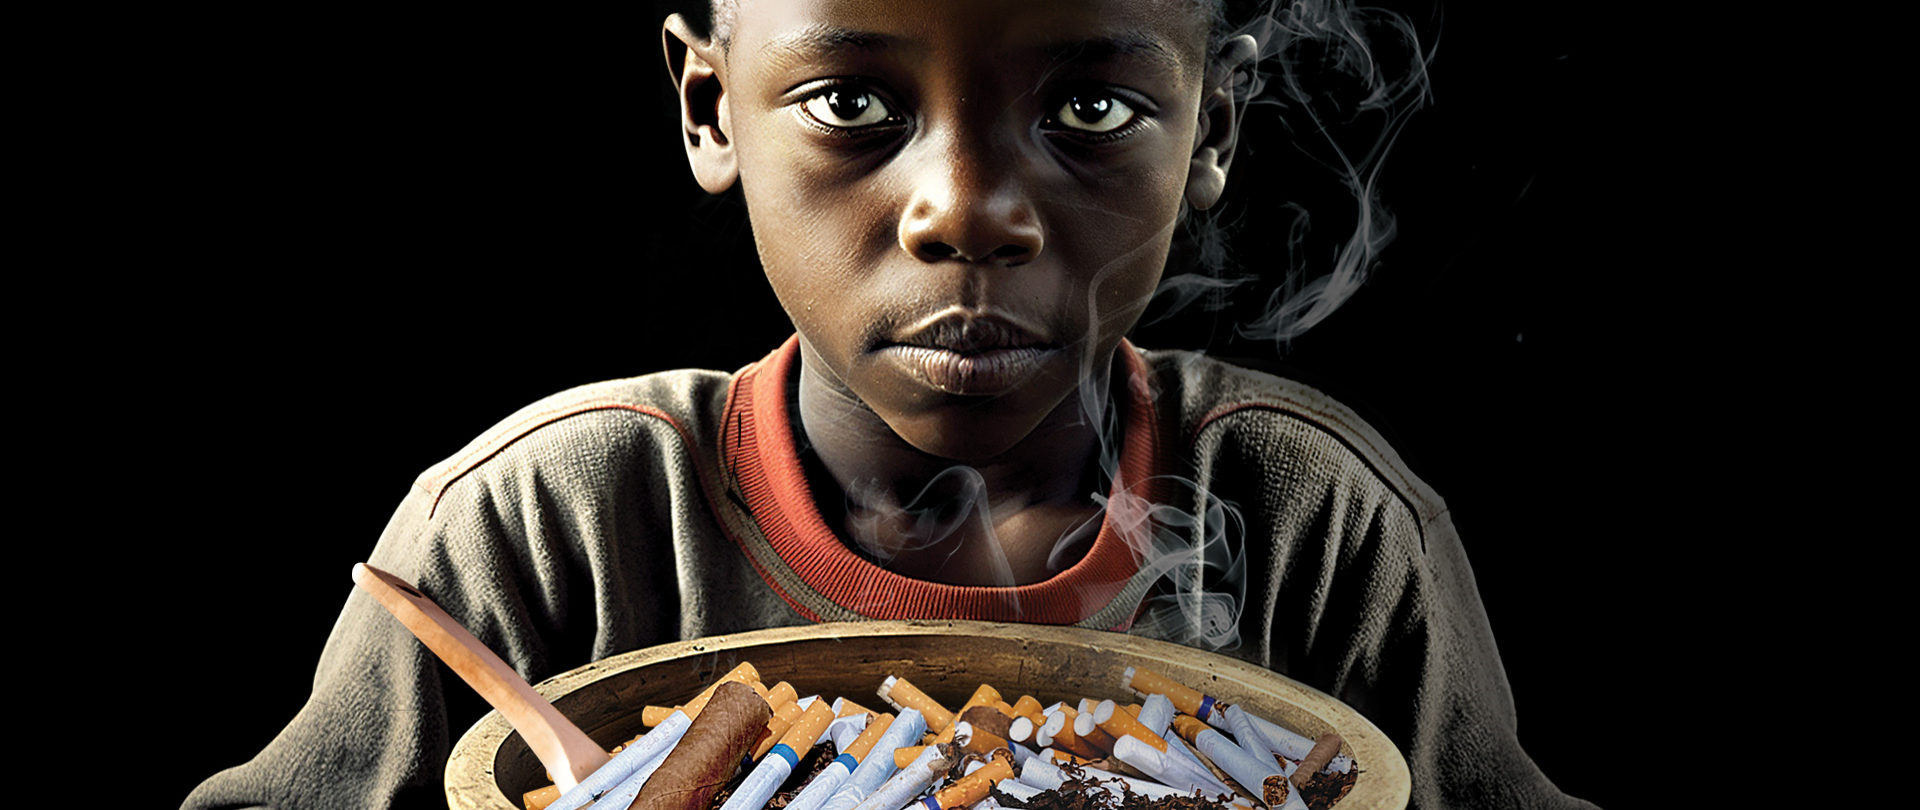 plakat czarny, chłopiec ciemnej karnacji, smutne oczy trzyma talerz z papierosami jak posiłkiem